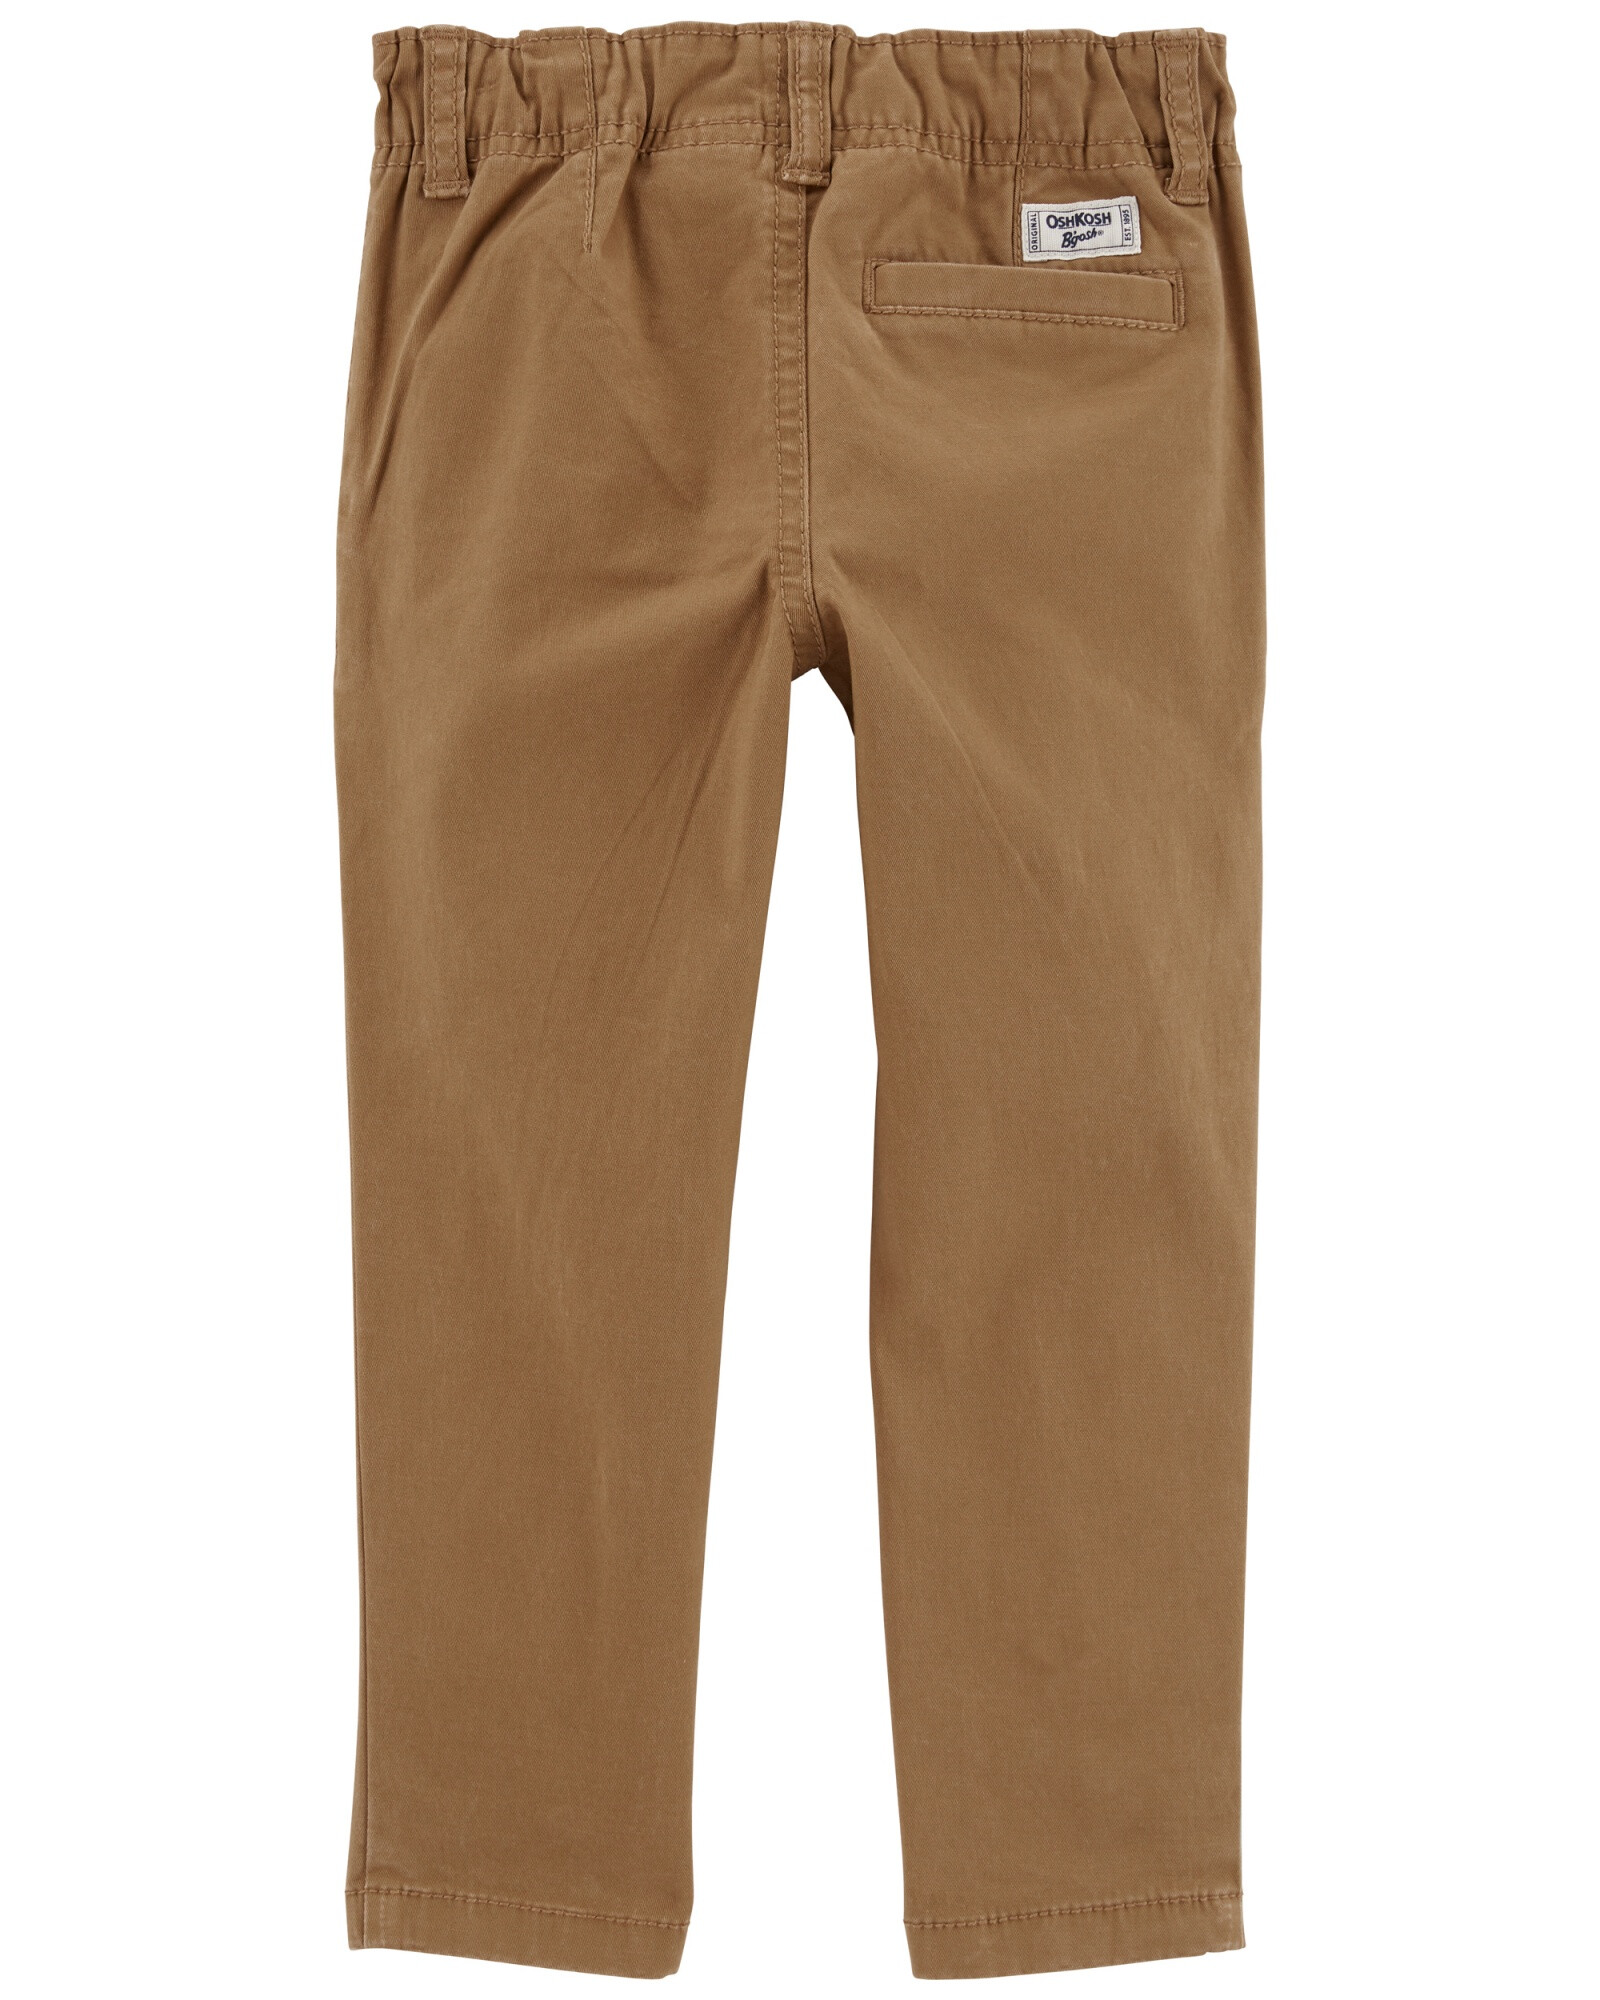 Pantalón de algodón, ajustado, marrón. Talles 2-5T Sin color